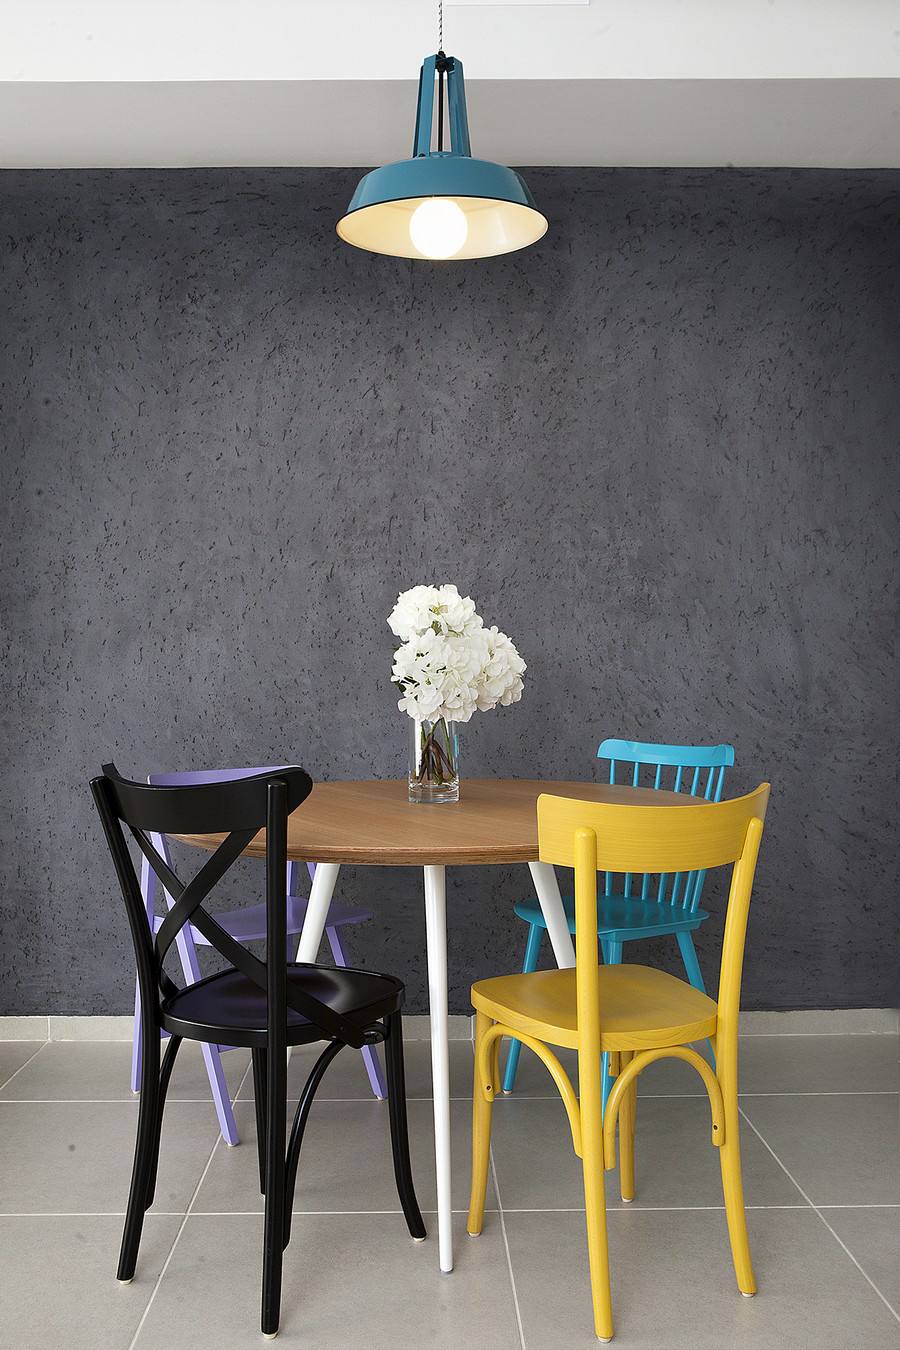 多彩以色列极简风格餐厅桌椅设计